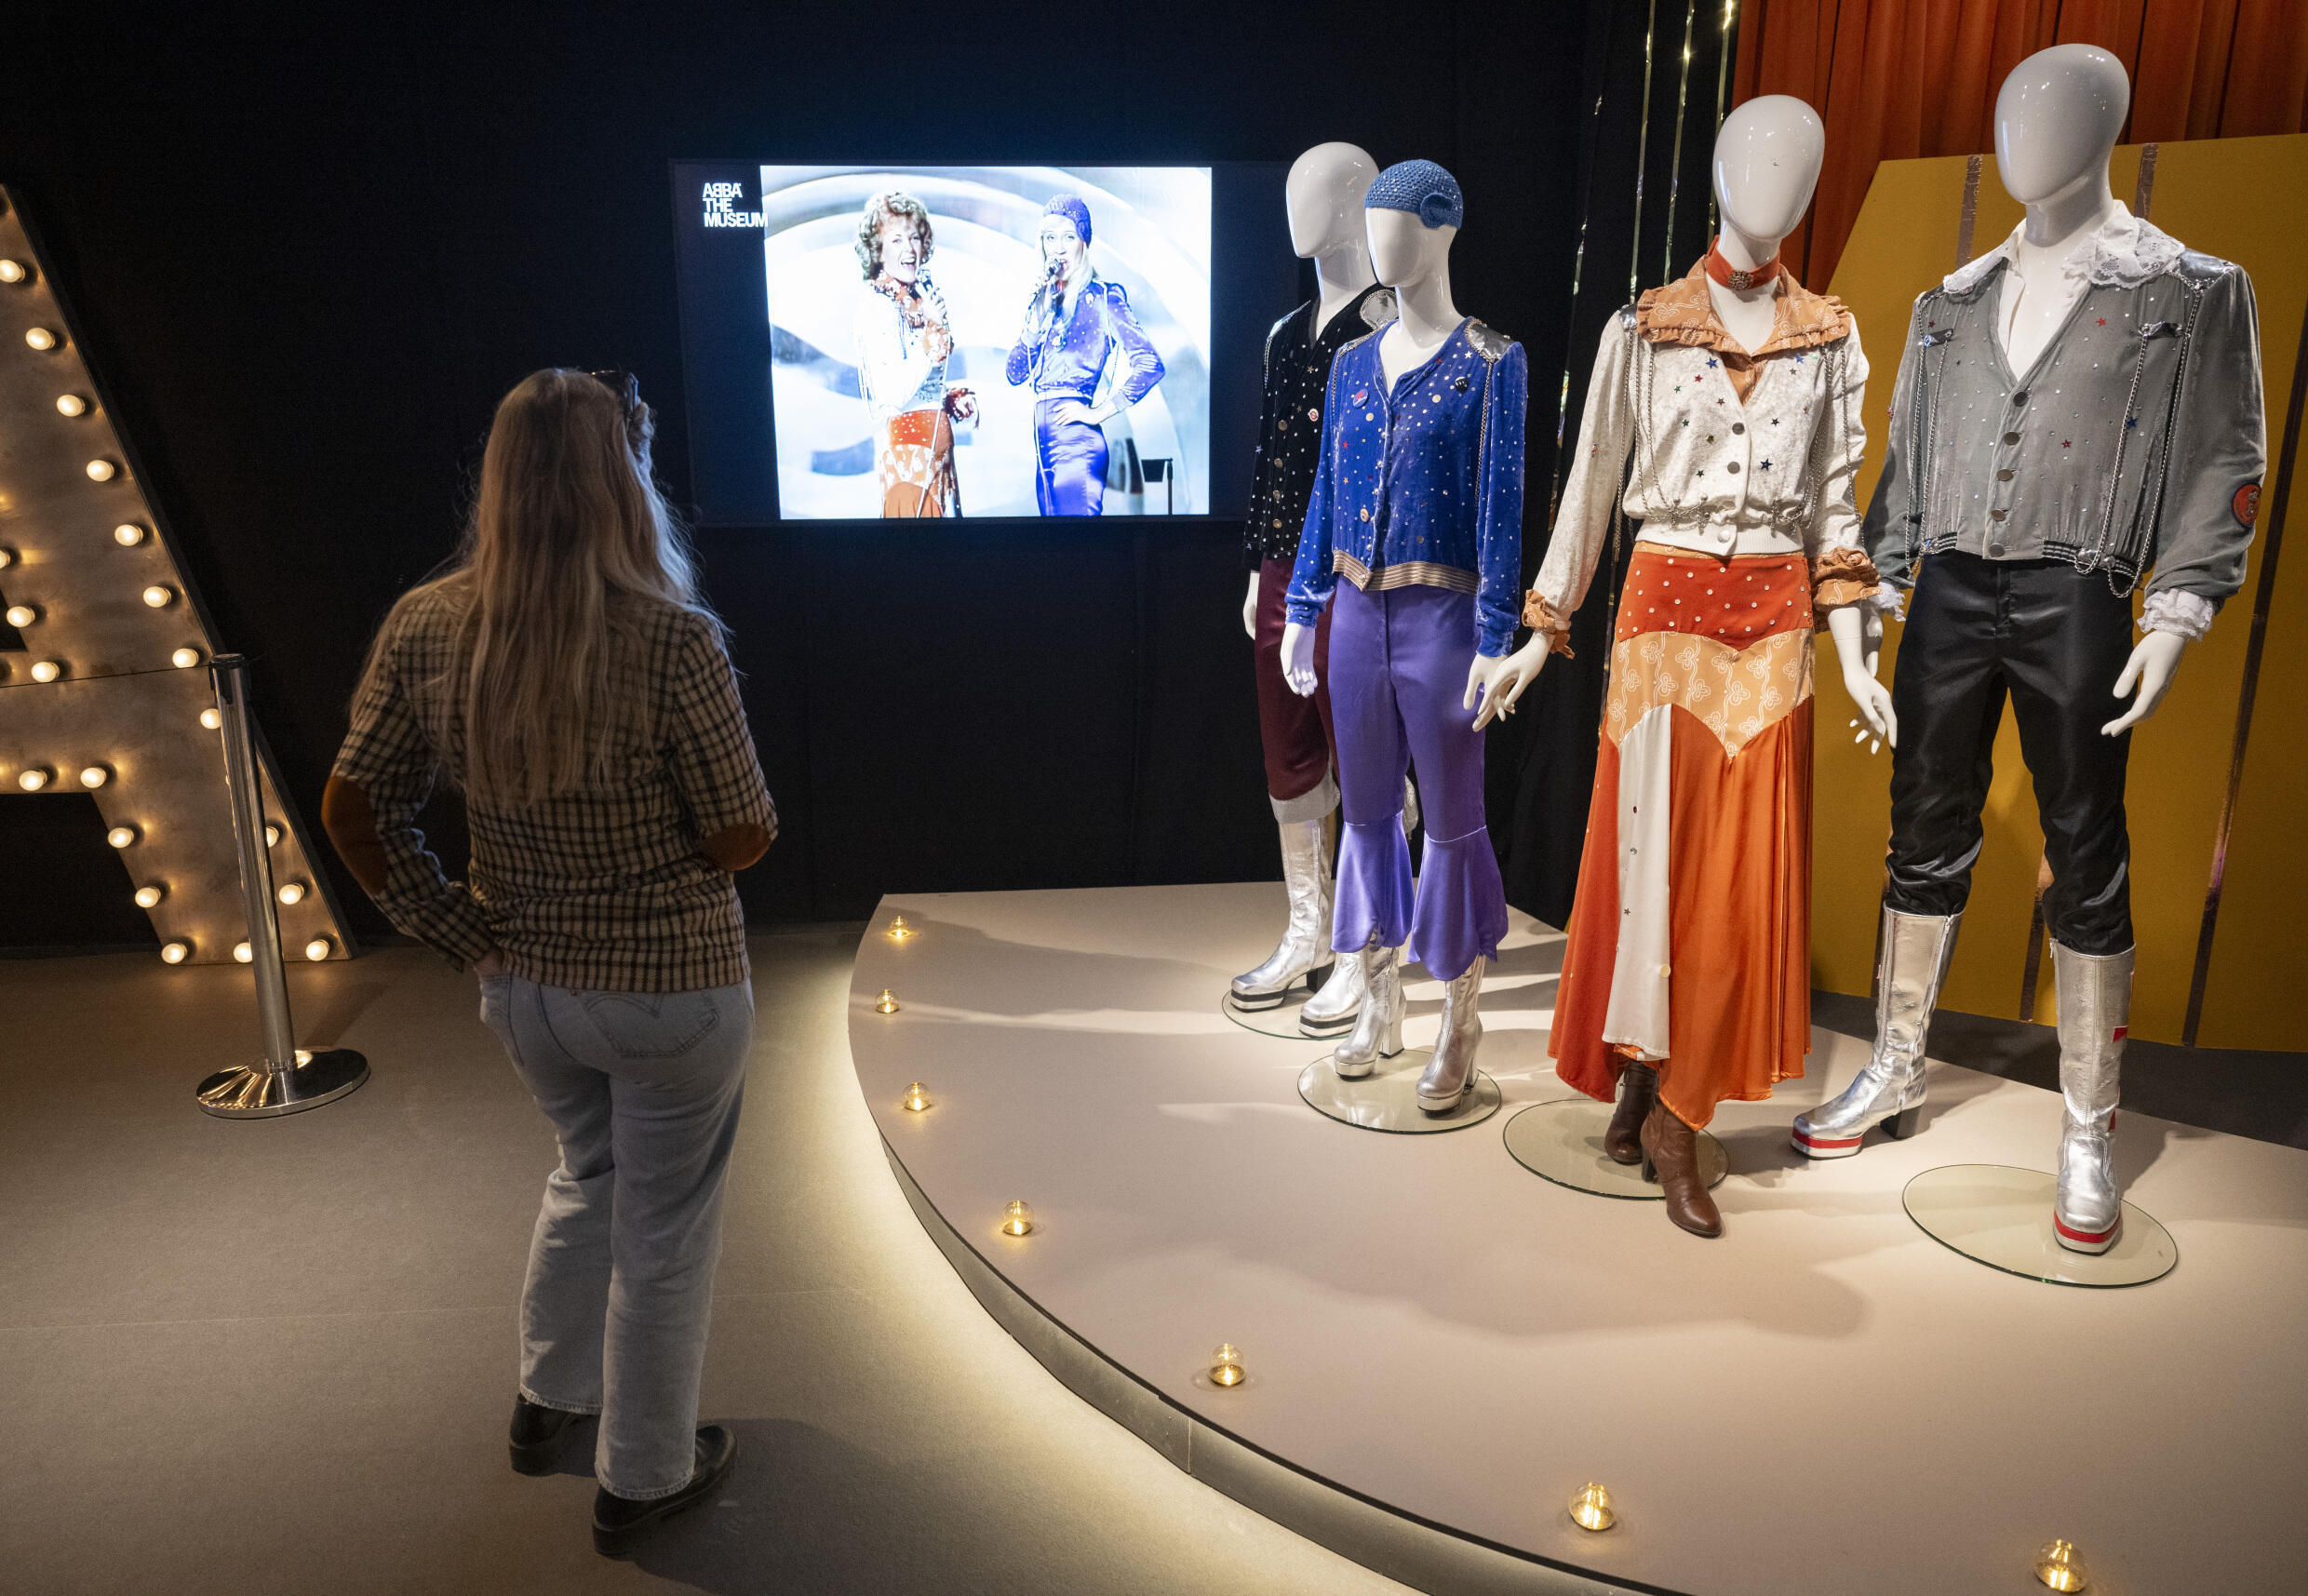 ABBA gewann den Song Contest vor 50 Jahren – jetzt sind ihre Kostüme in Malmö ausgestellt